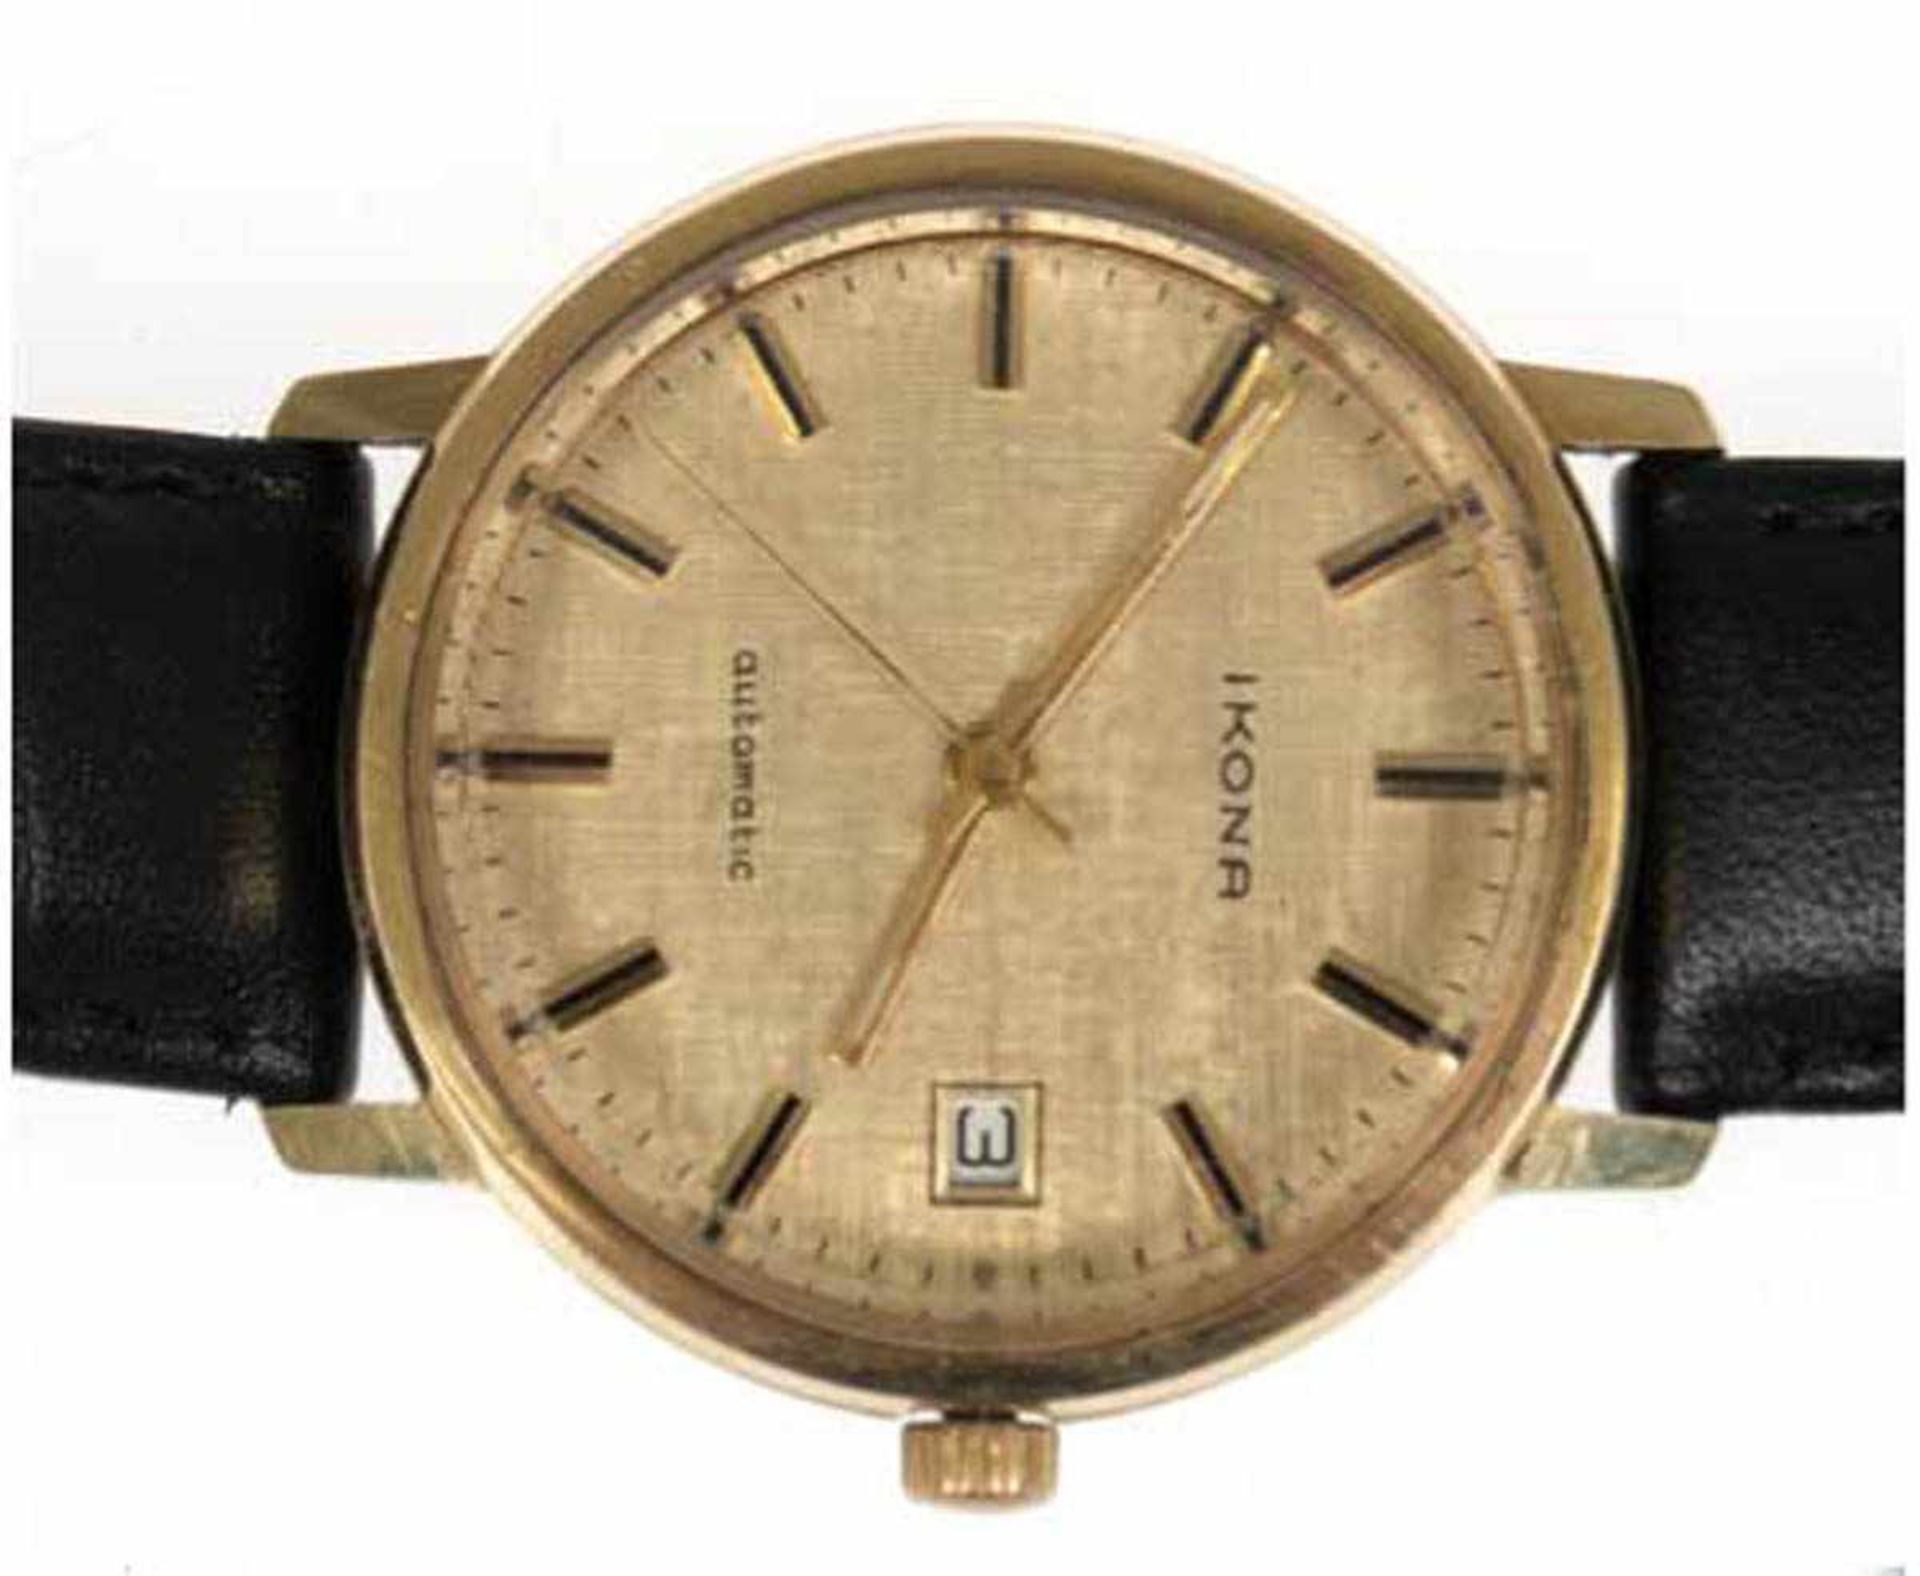 Herren-Armbanduhr "Ikona", 585er GG, gemarkt mit RP im Viereck, rundes Zifferblatt,Automatic,